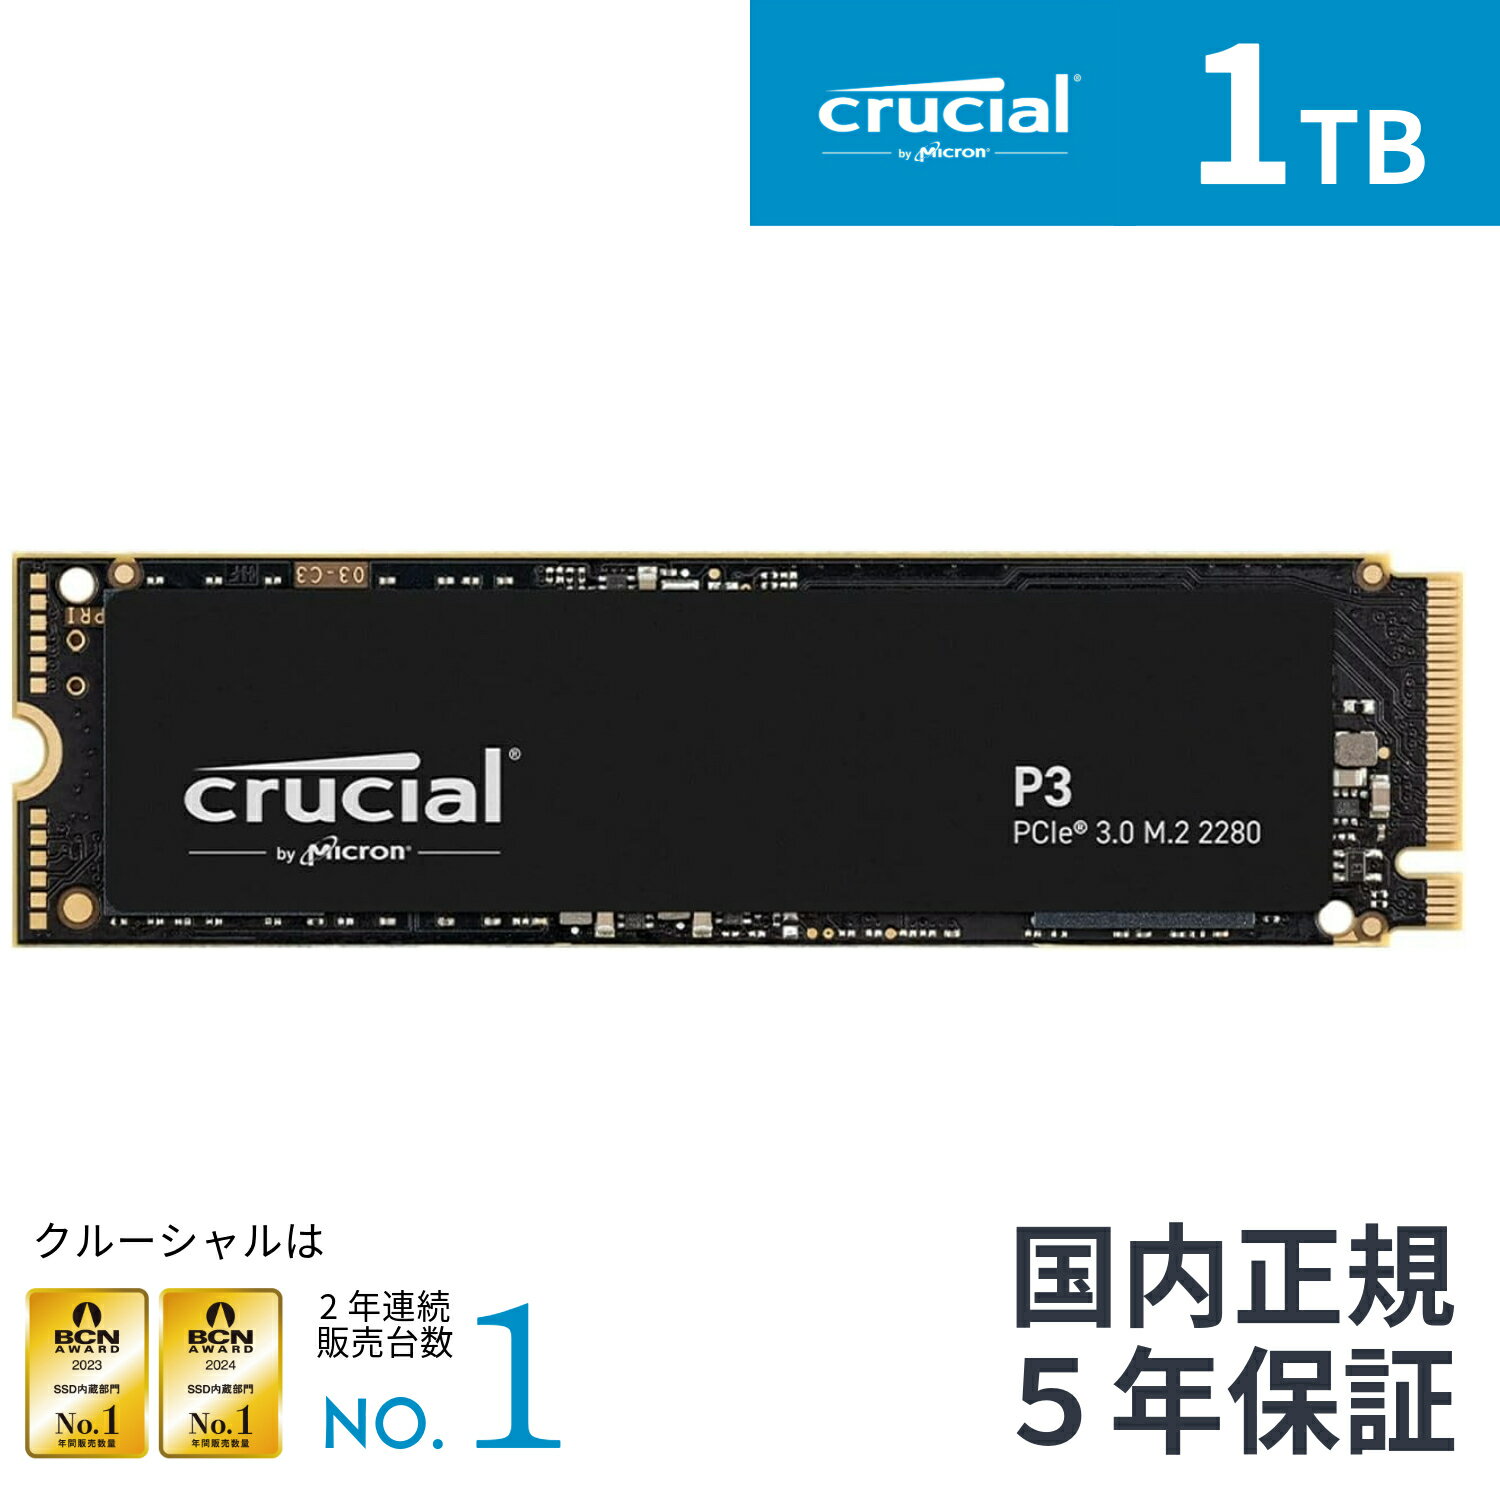 【国内正規流通品】Crucial クルーシャルP3 1TB 3D NAND NVMe PCIe3.0 M.2 SSD 最大3500MB/秒 CT1000P3SSD8JP 5年保…